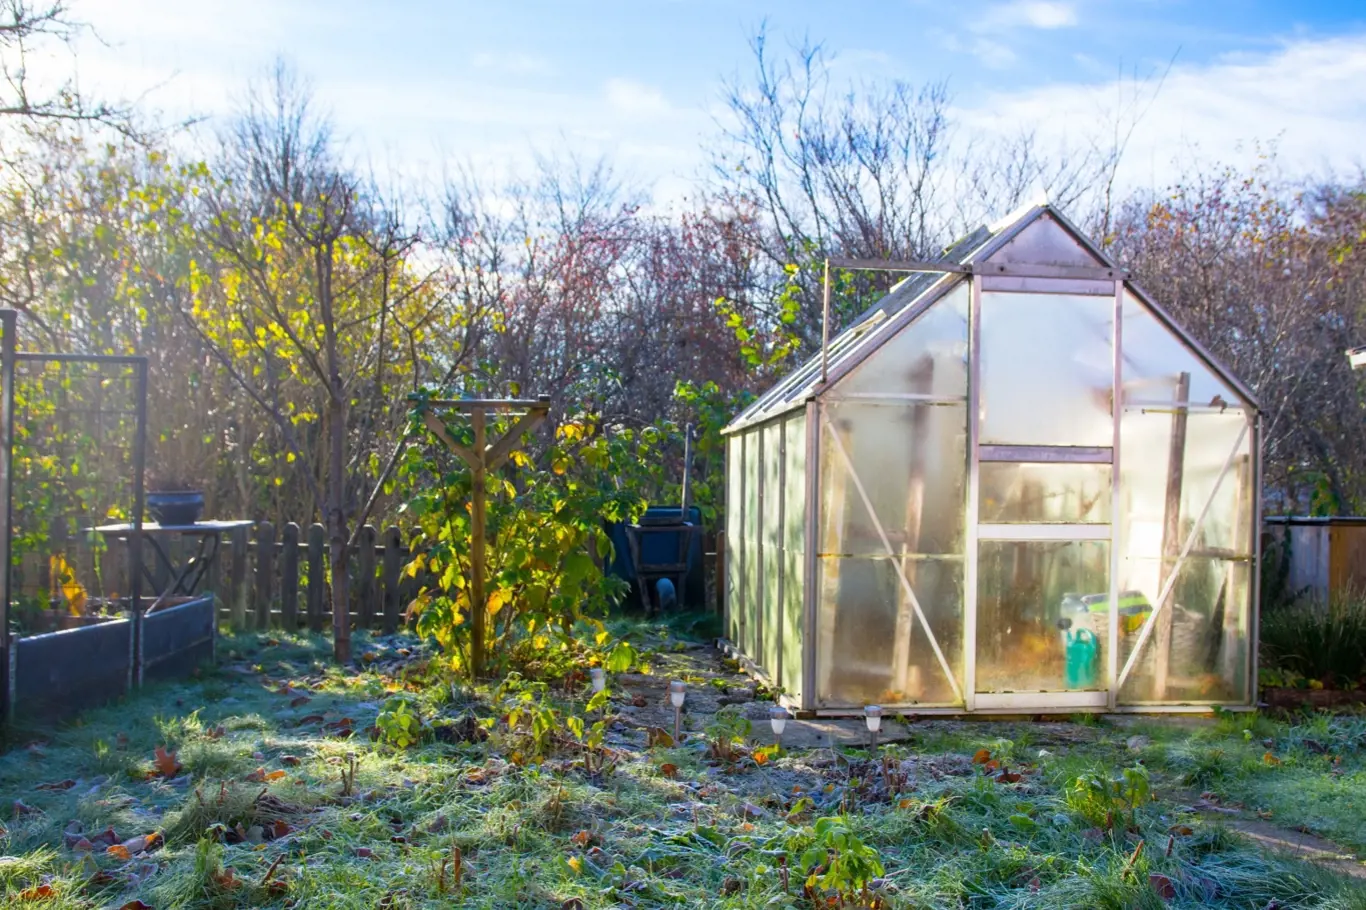 Víte, jak využít skleník či pařeniště i v zimě?